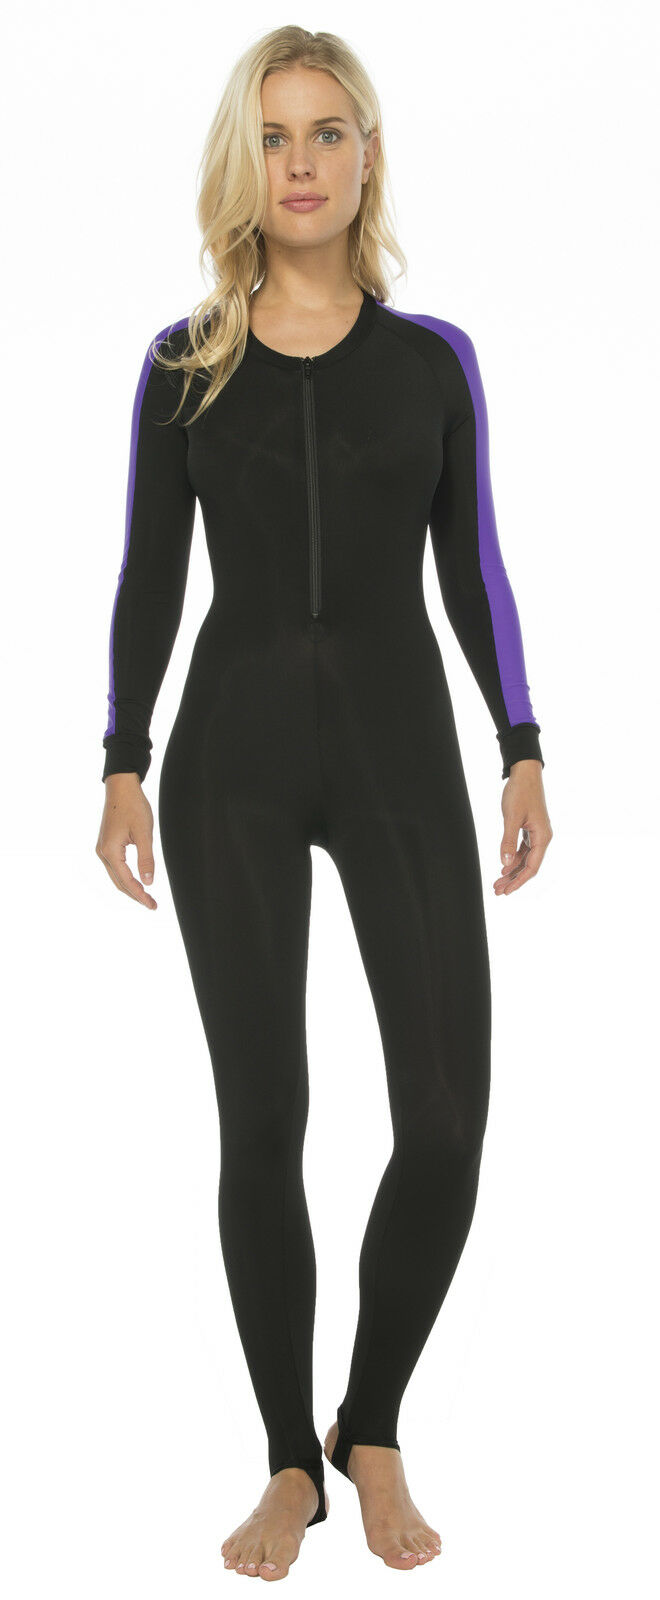 Phantom Aquatics Water Sport Women's Lycra Skin Surf Suit Wetsuit